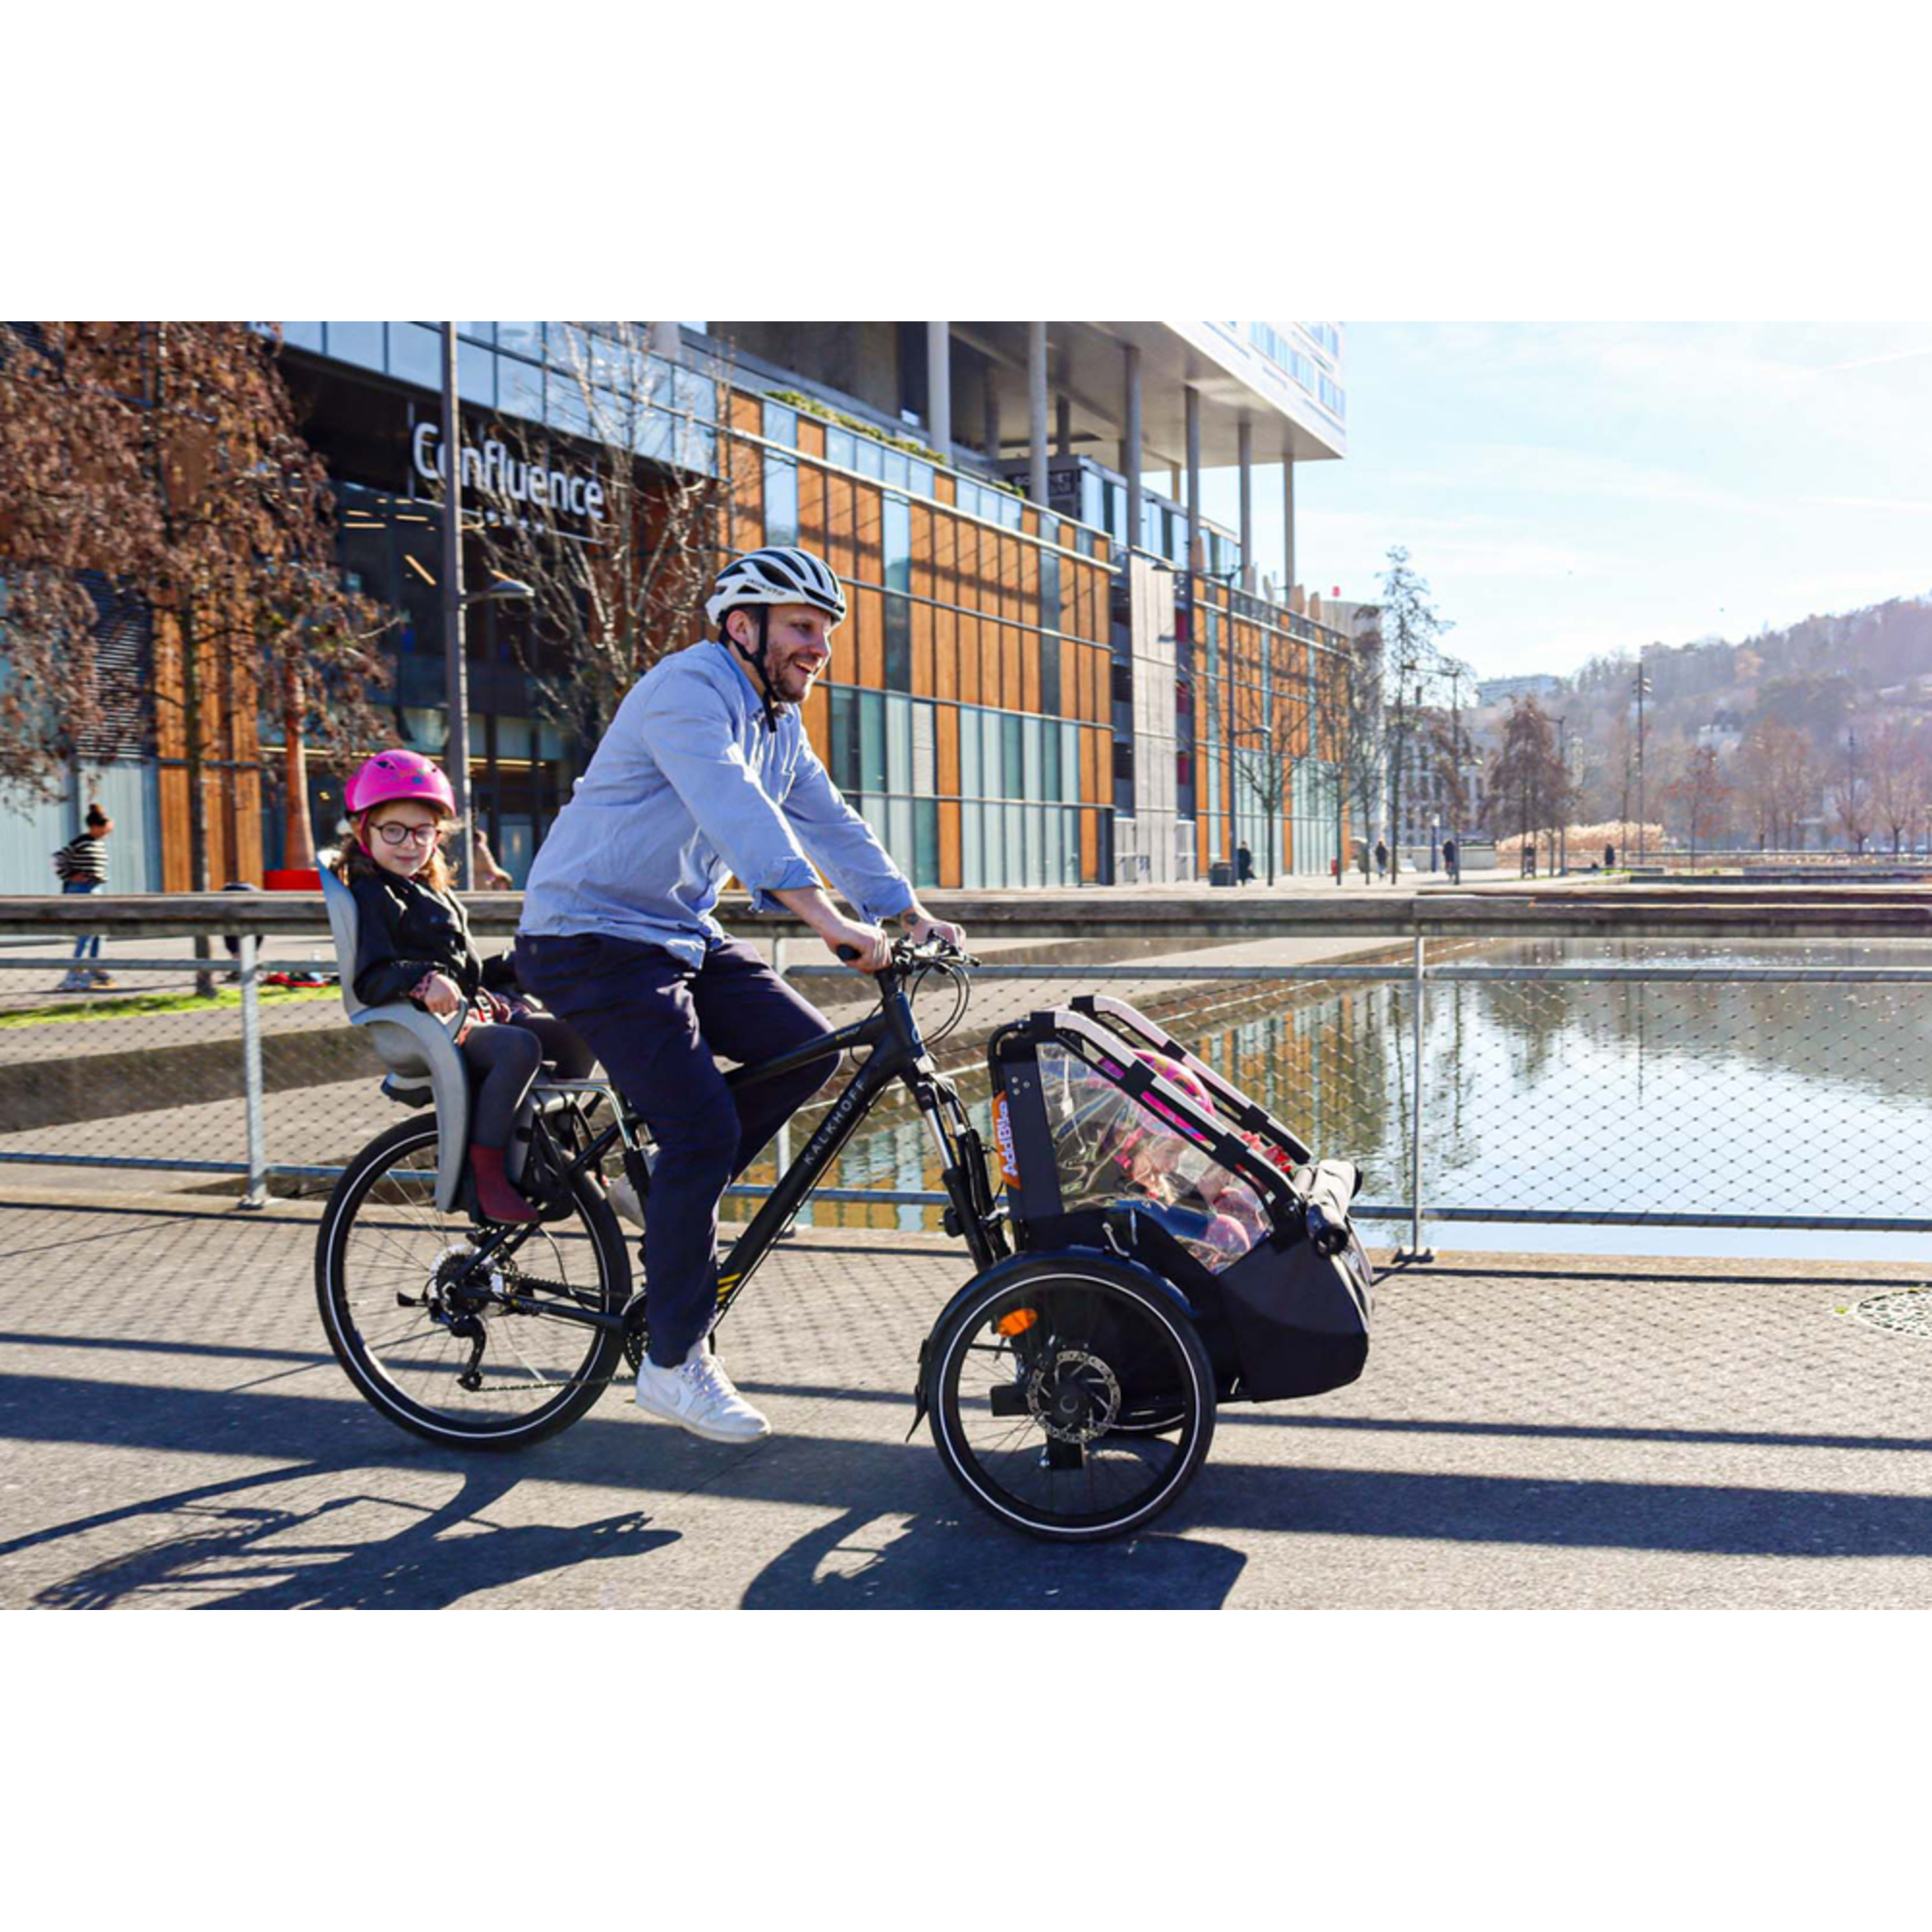 Kit Delantero Addbike Transporte Infantil - Gris/Negro - Kit Delantero: Transporte Infantil  MKP